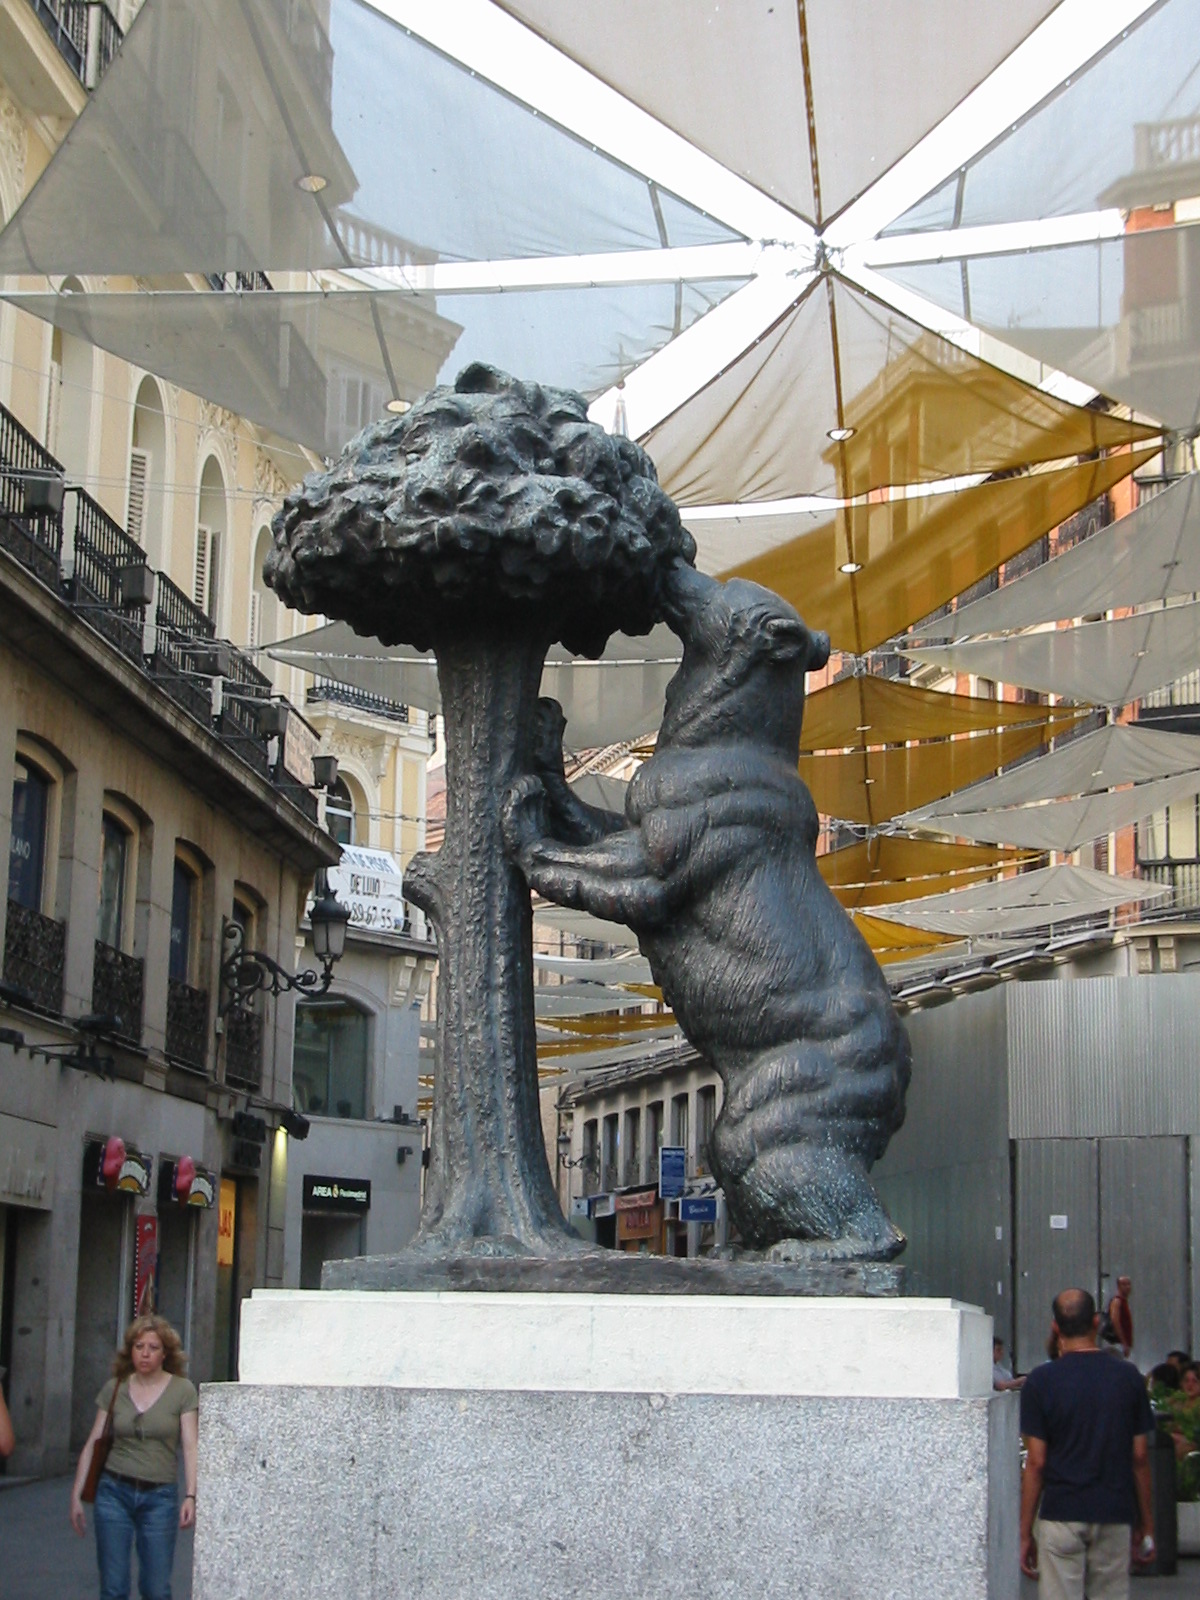 michieldeboer bronse statue sculpture of a bear